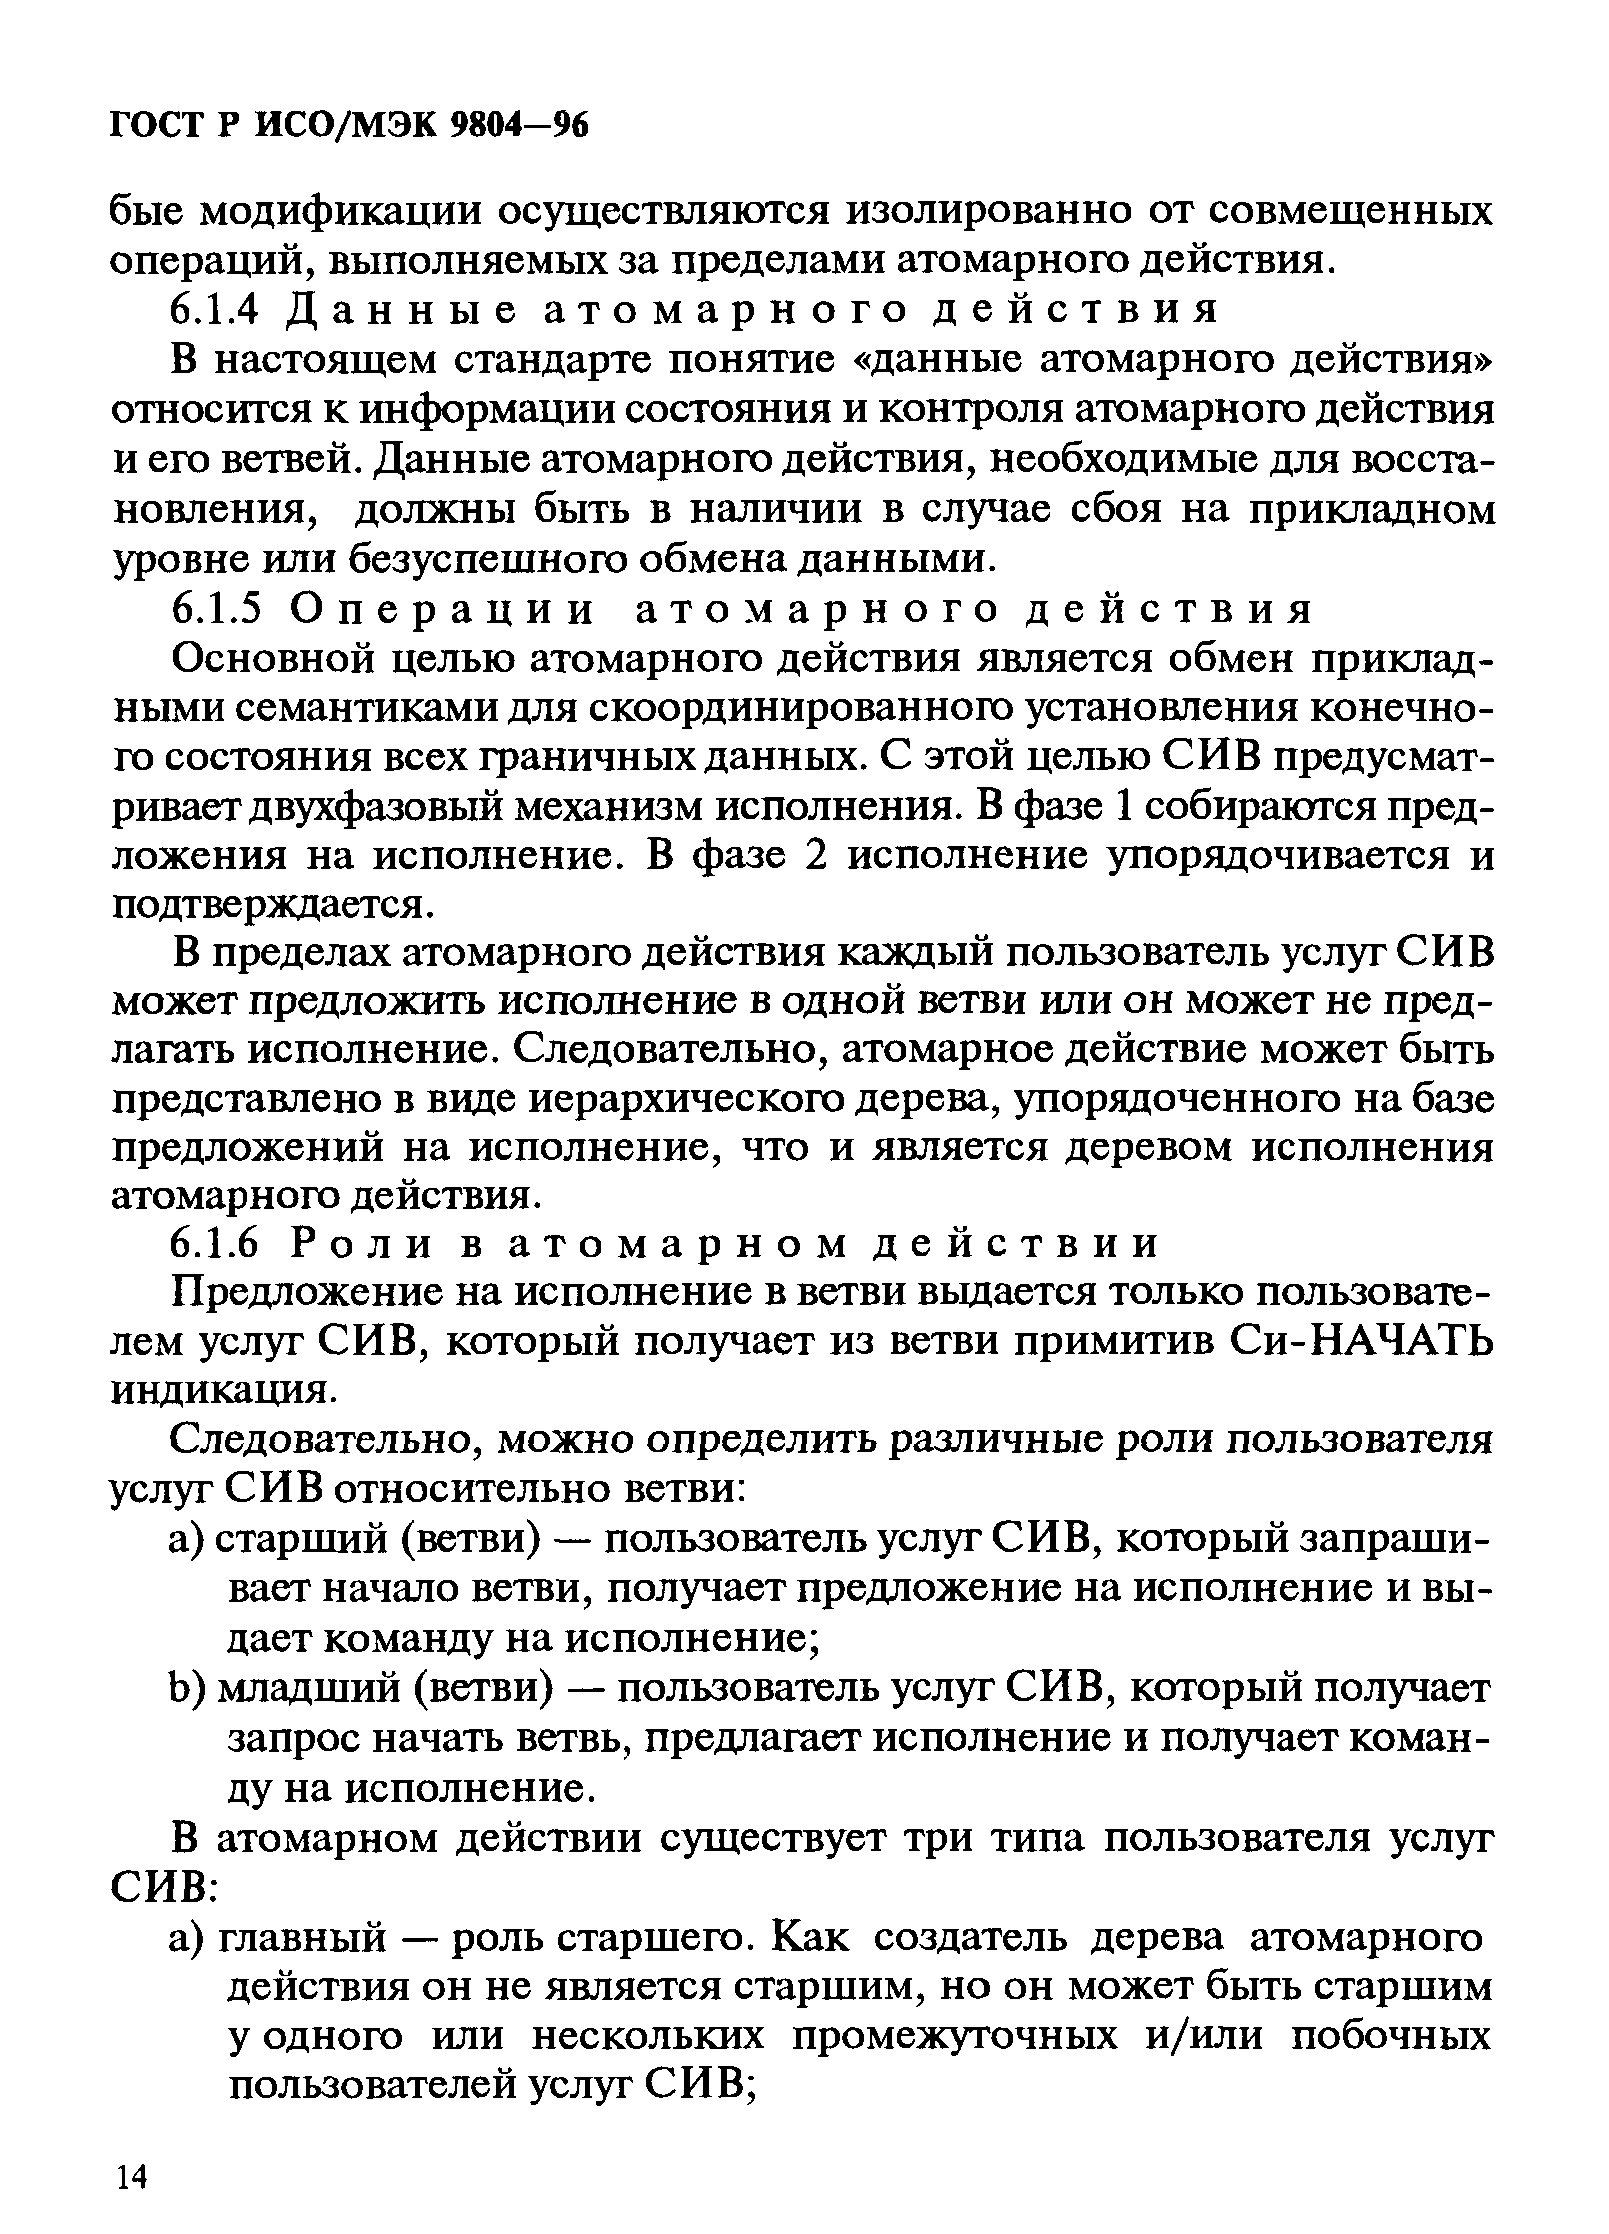 ГОСТ Р ИСО/МЭК 9804-96